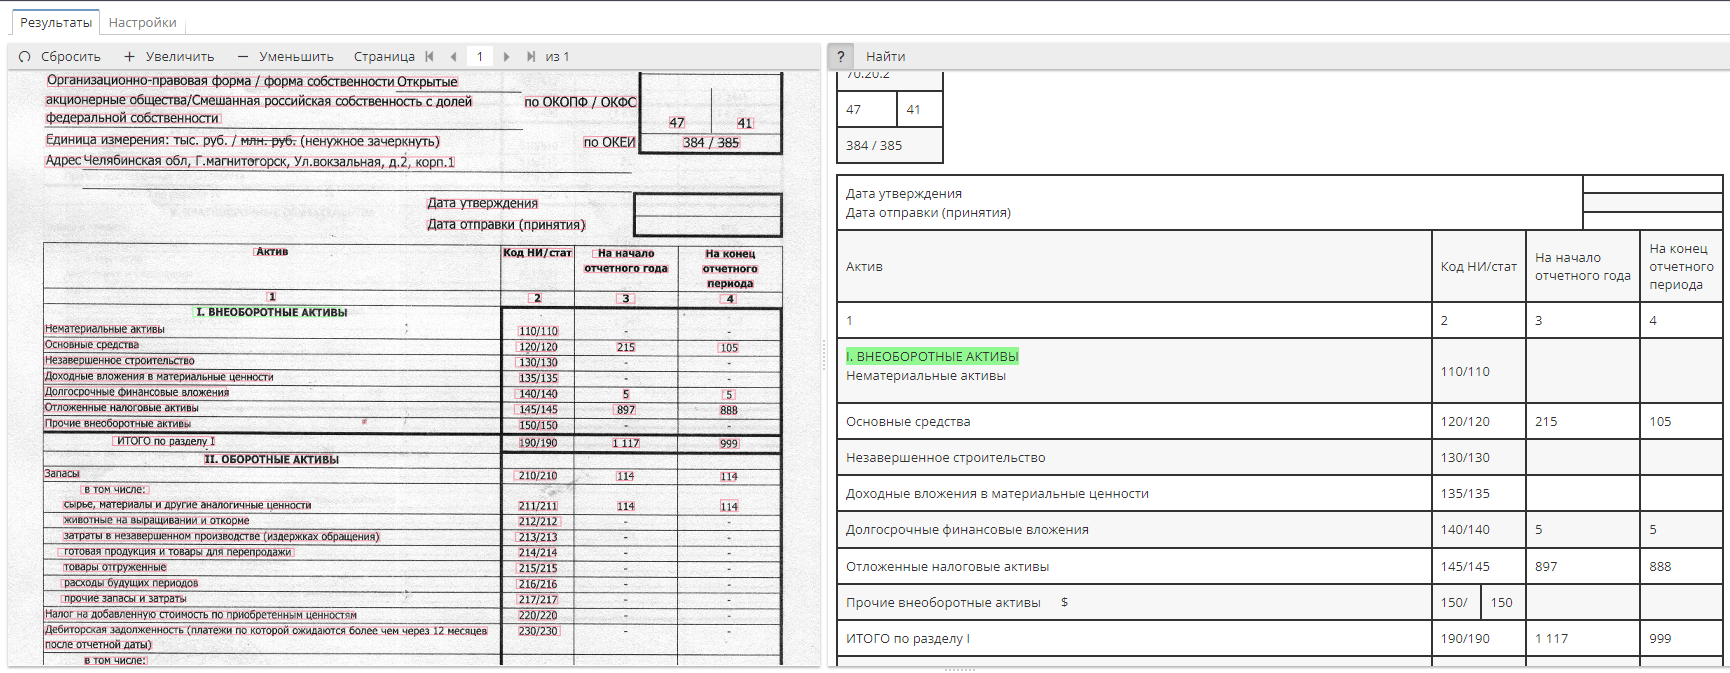 Интерфейс модуля оптического распознания символов (OCR) в нормативной документации на базе PolyAnalyst